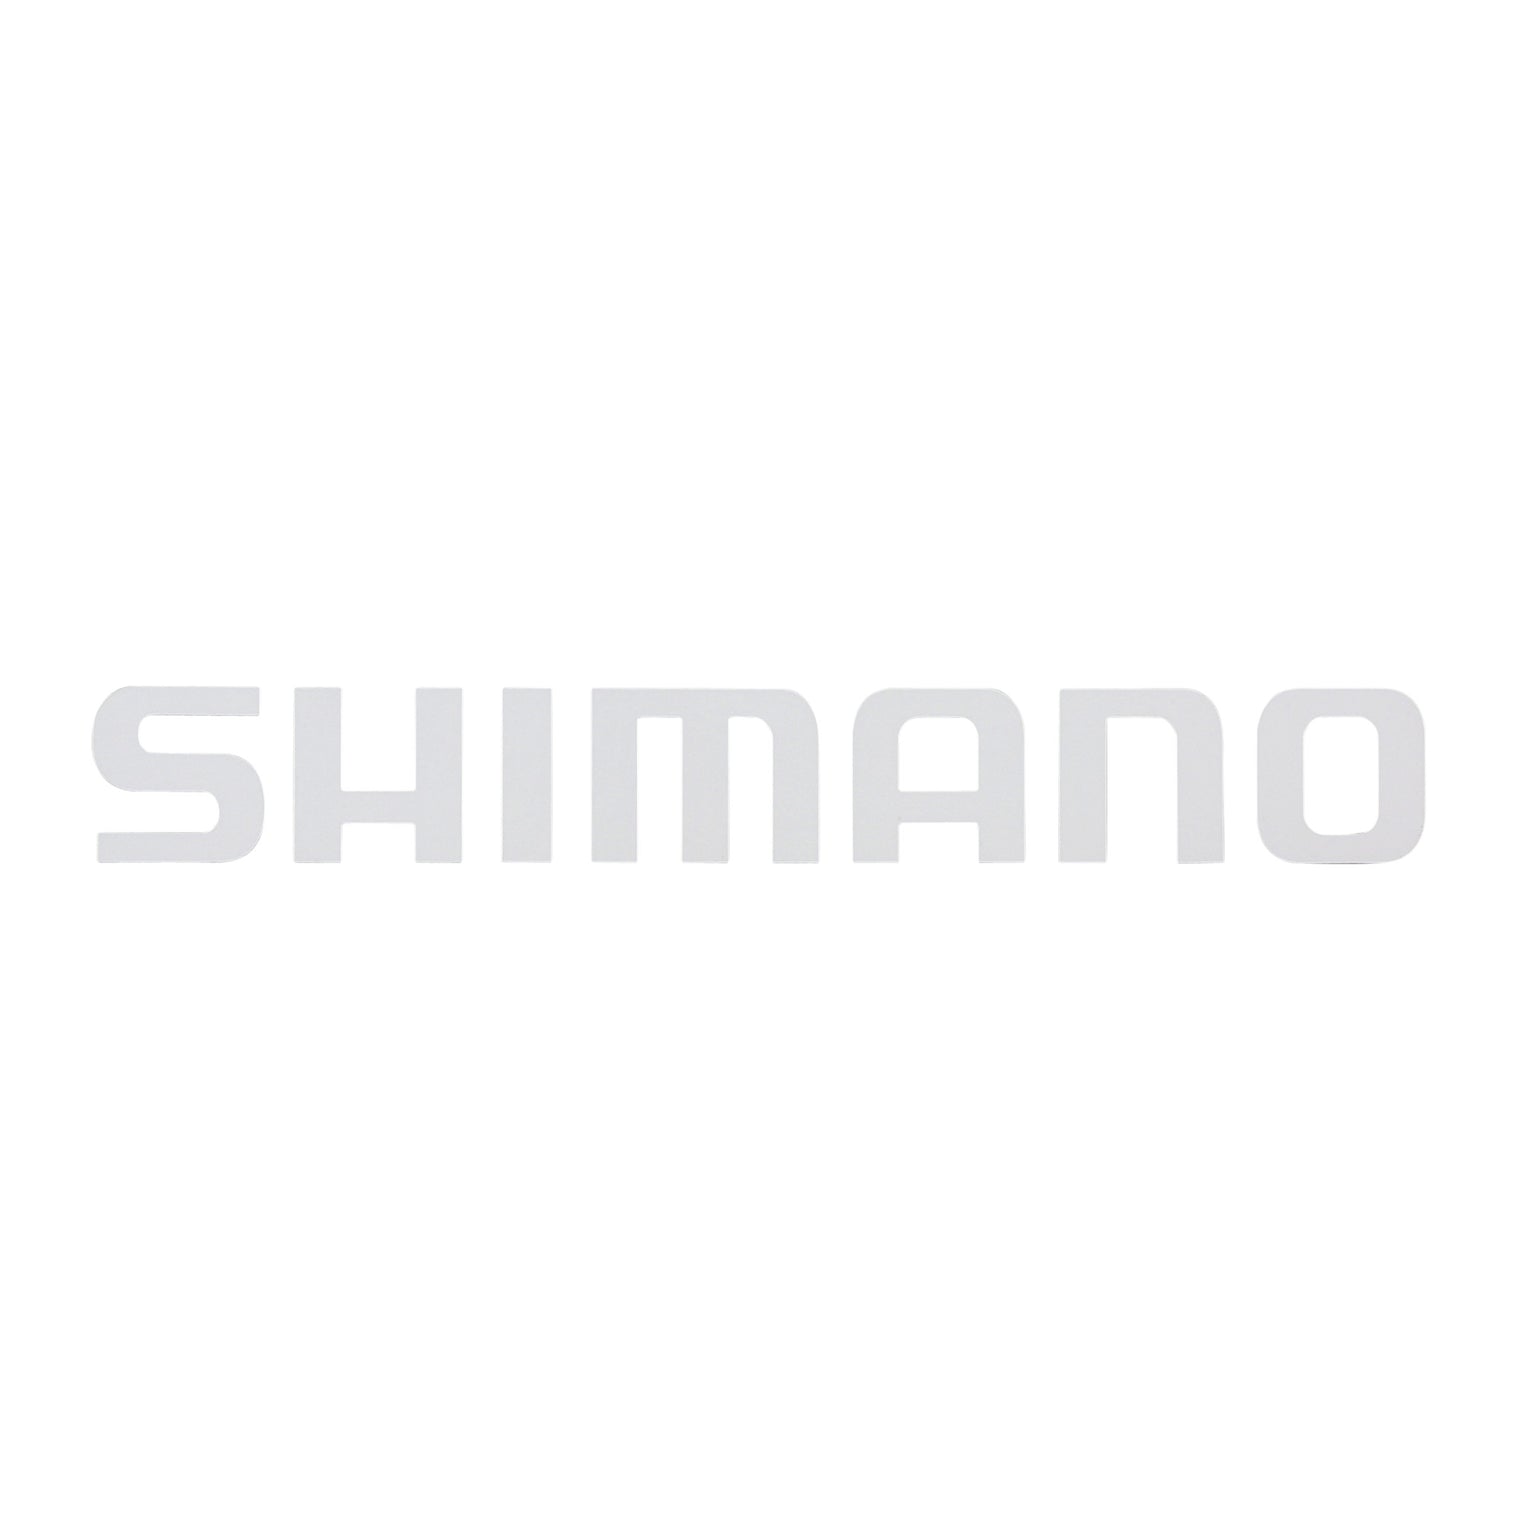 SHIMANO DECALS